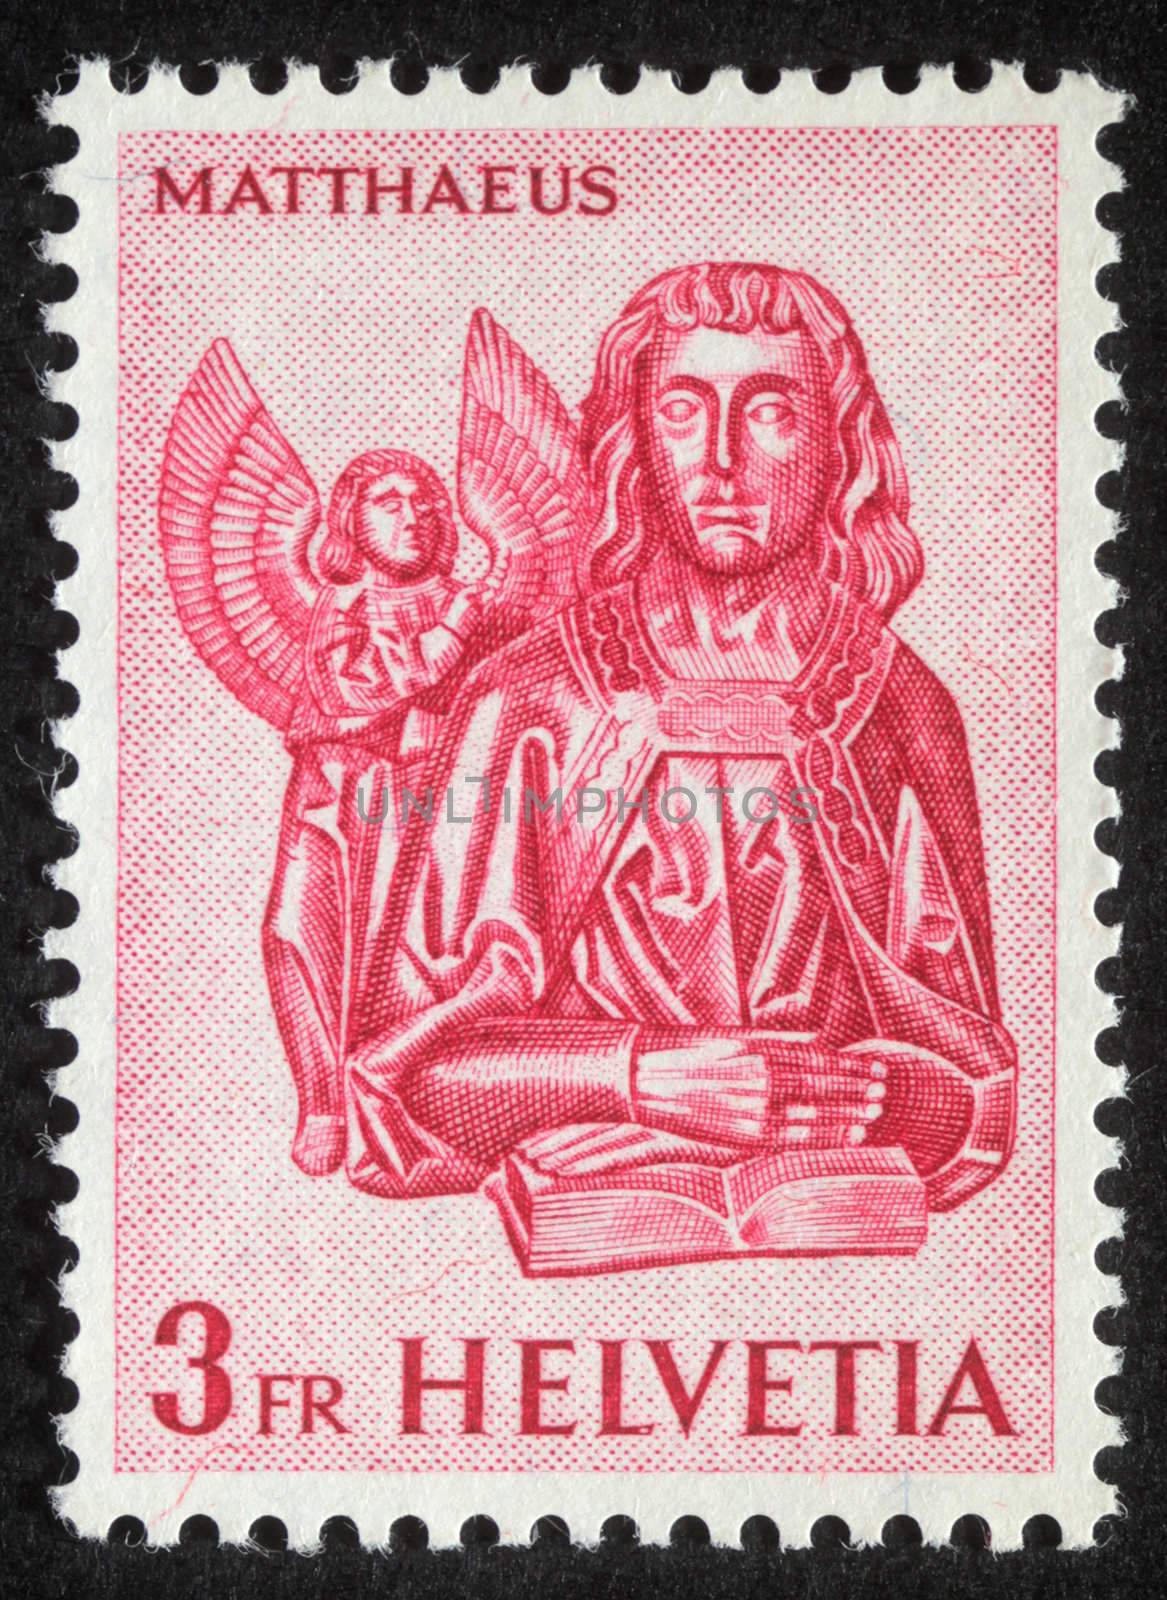 SWITZERLAND - CIRCA 1982 : A s stamp printed in Switzerland showing Saint Matthew the Evangelist